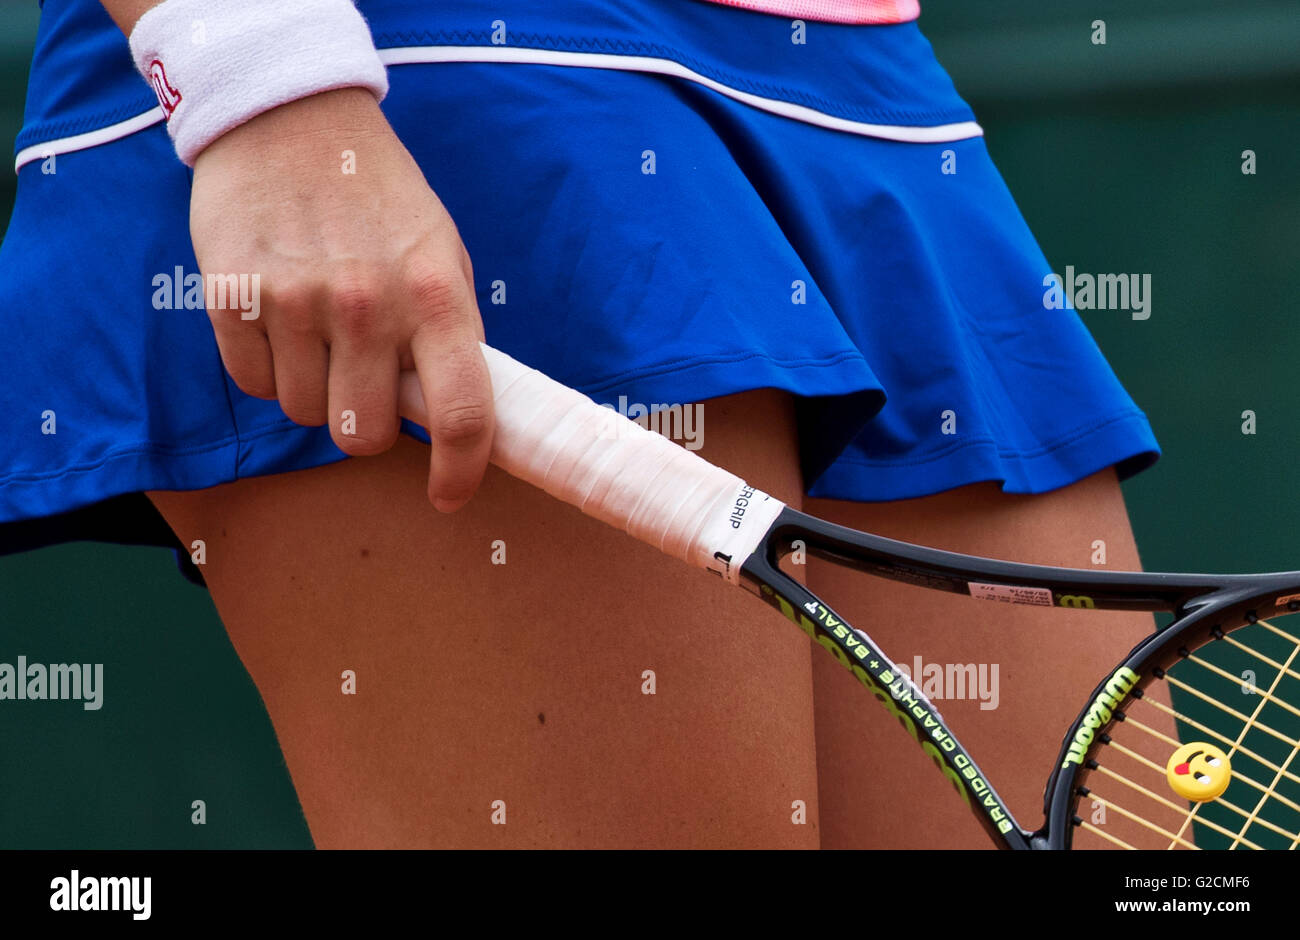 París, Francia, 22 de junio, 2016, tenis, Roland Garros, womans mano sujetando una raqueta. Foto: Henk Koster/tennisimages.com Foto de stock